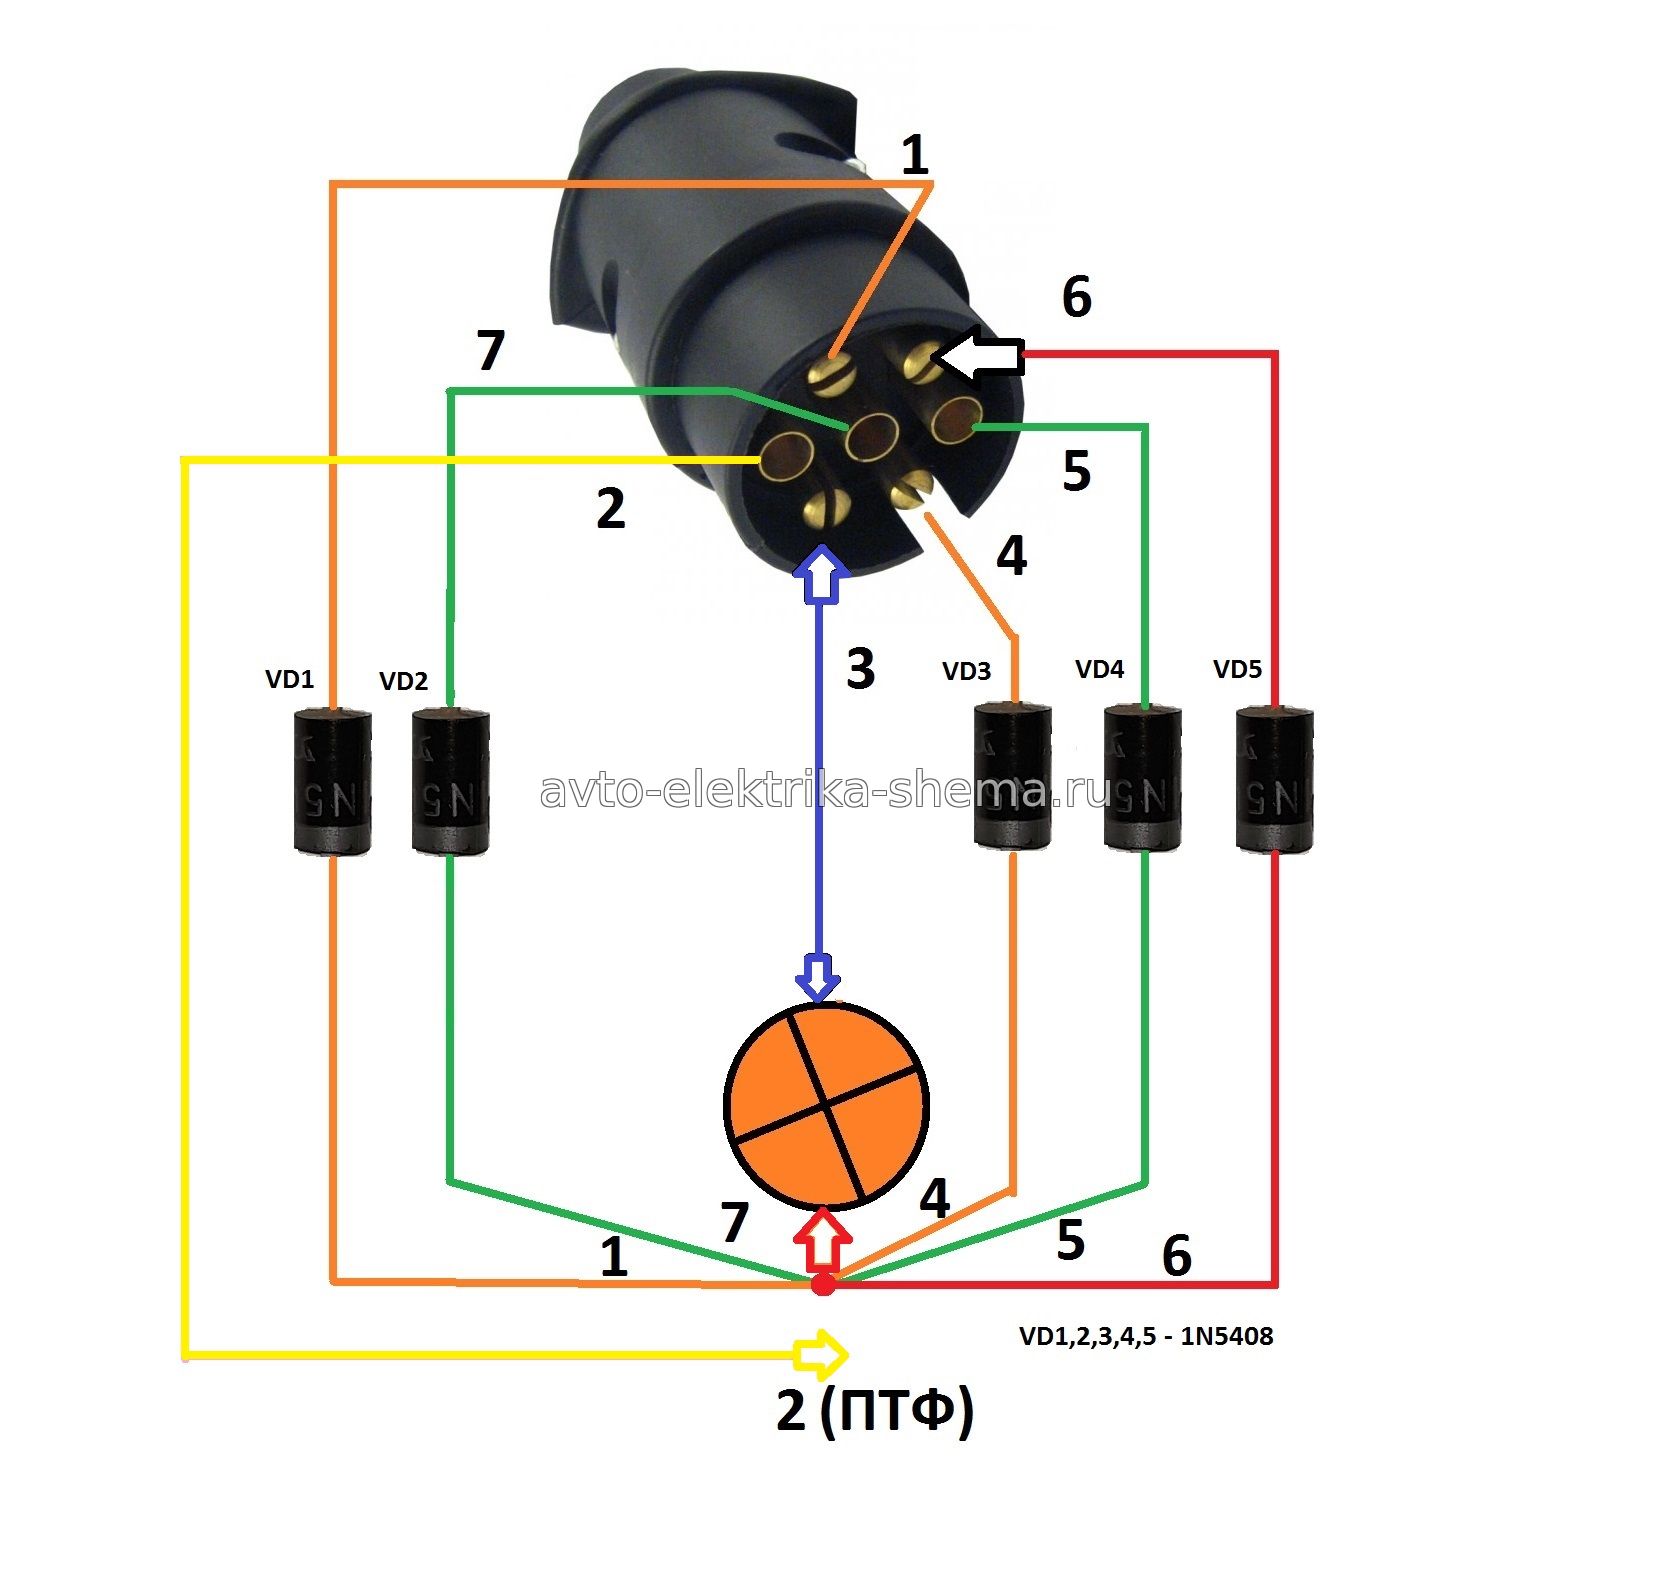 Схема переходника для проверки розетки прицепного. 1) Левый поворот, 2) Противотуманный фонарь, 3) Масса, 4) Поворот правый, 5) 7) Габарит и подсветка номера, 6) Стоп-сигнал.